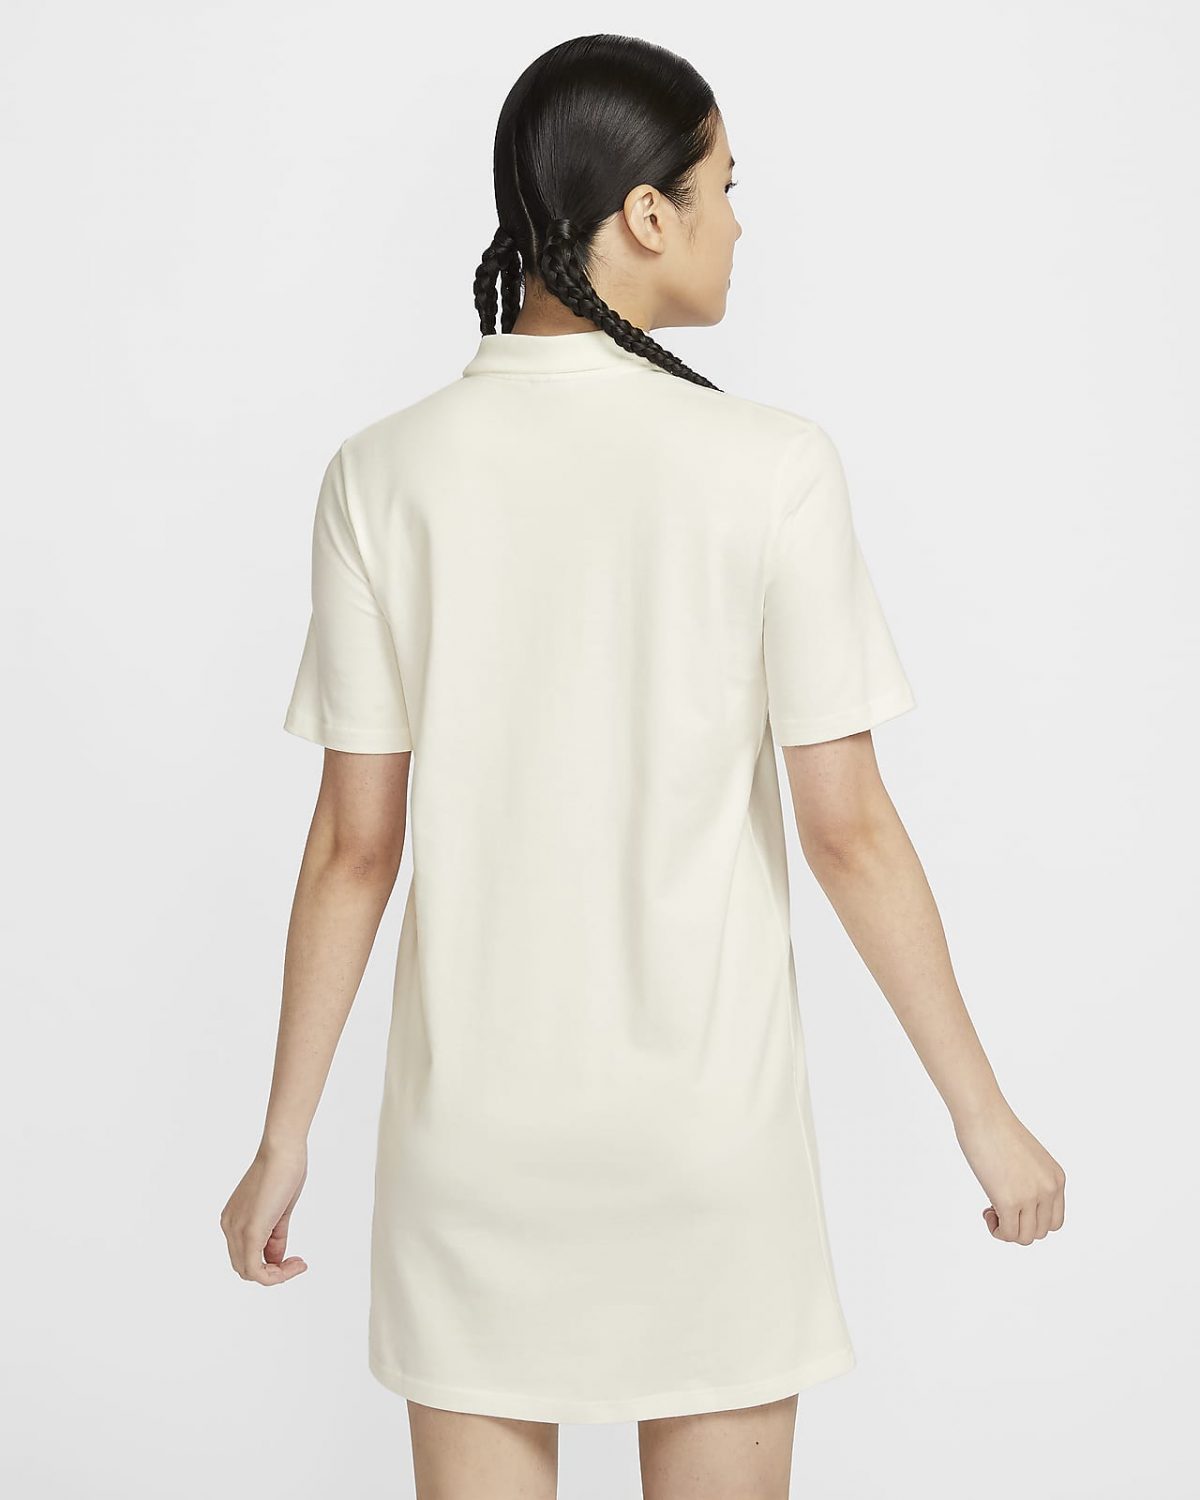 Женская платье Nike Sportswear белое фотография